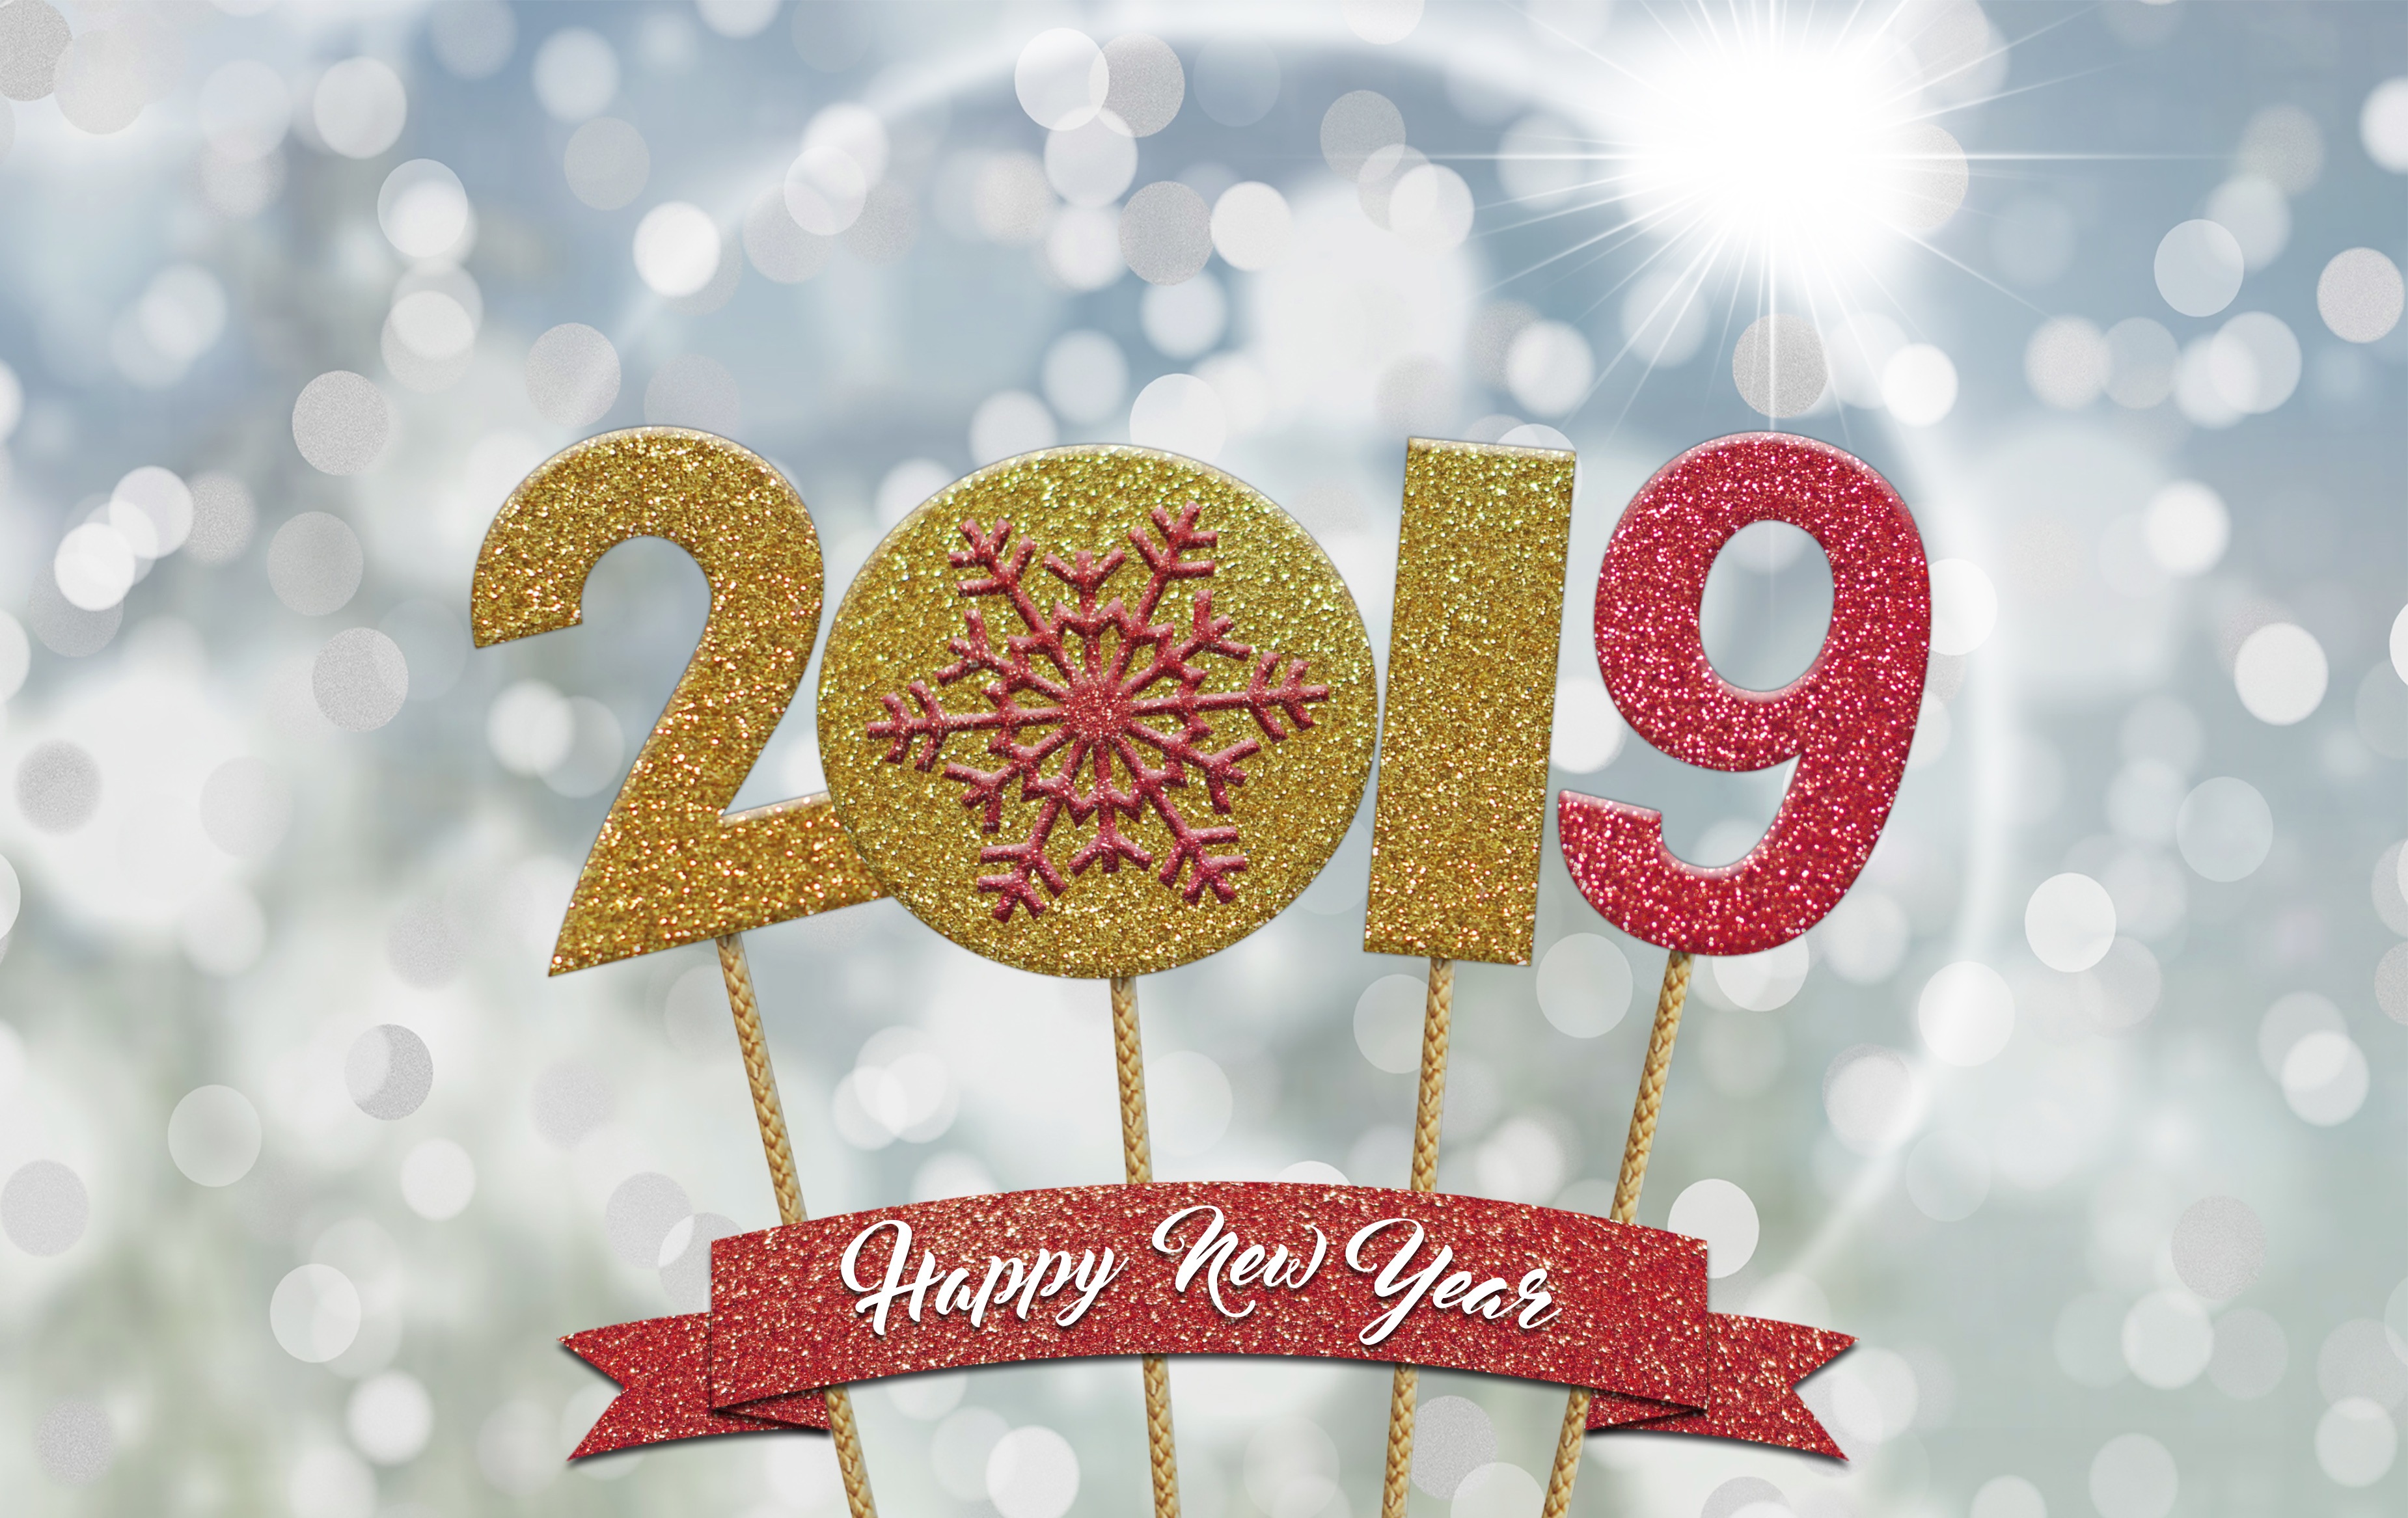 Handy-Wallpaper Feiertage, Frohes Neues Jahr, Neujahr 2019 kostenlos herunterladen.